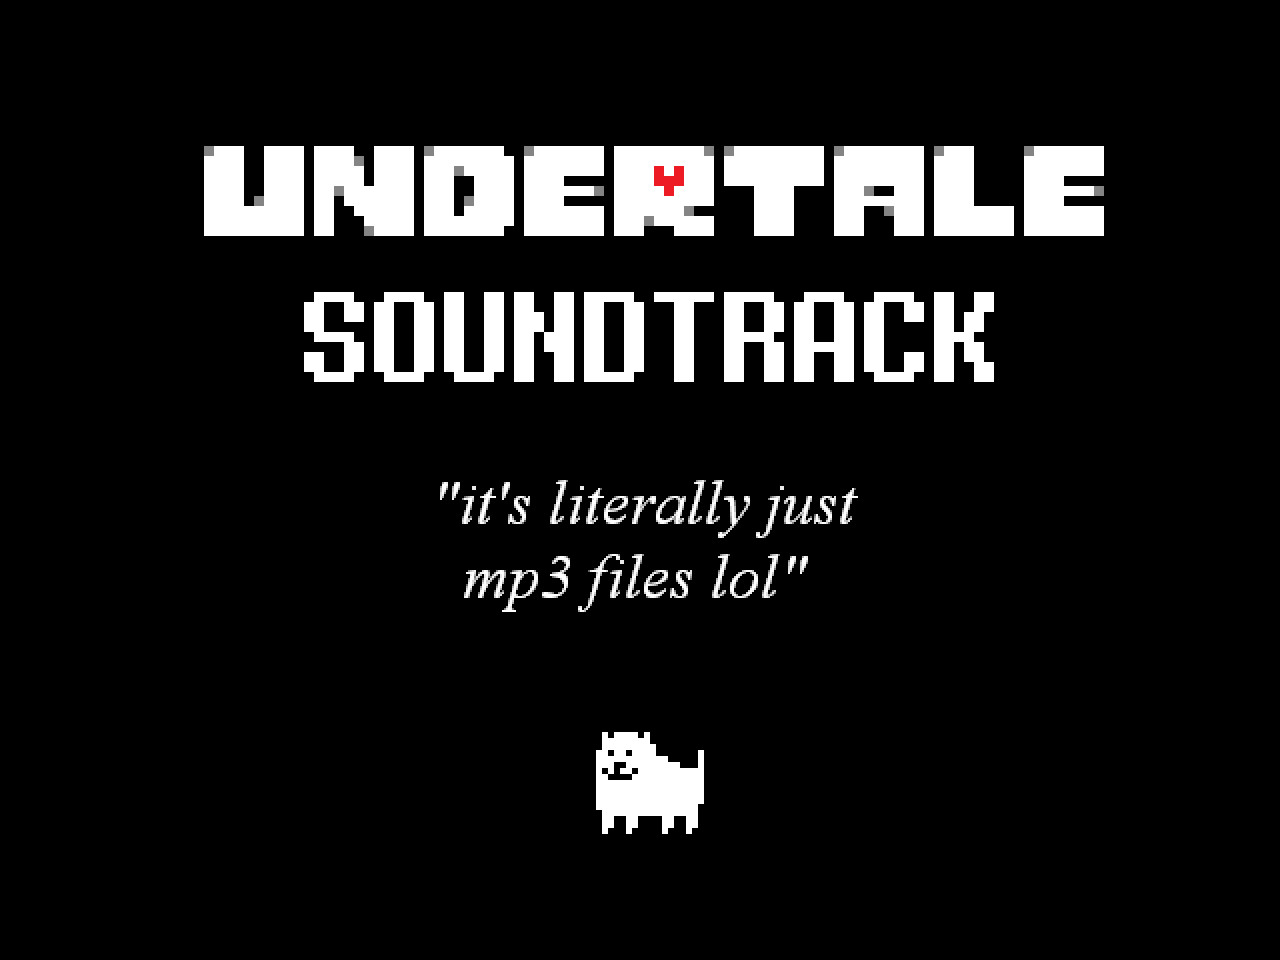 UNDERTALE Soundtrack sur Steam